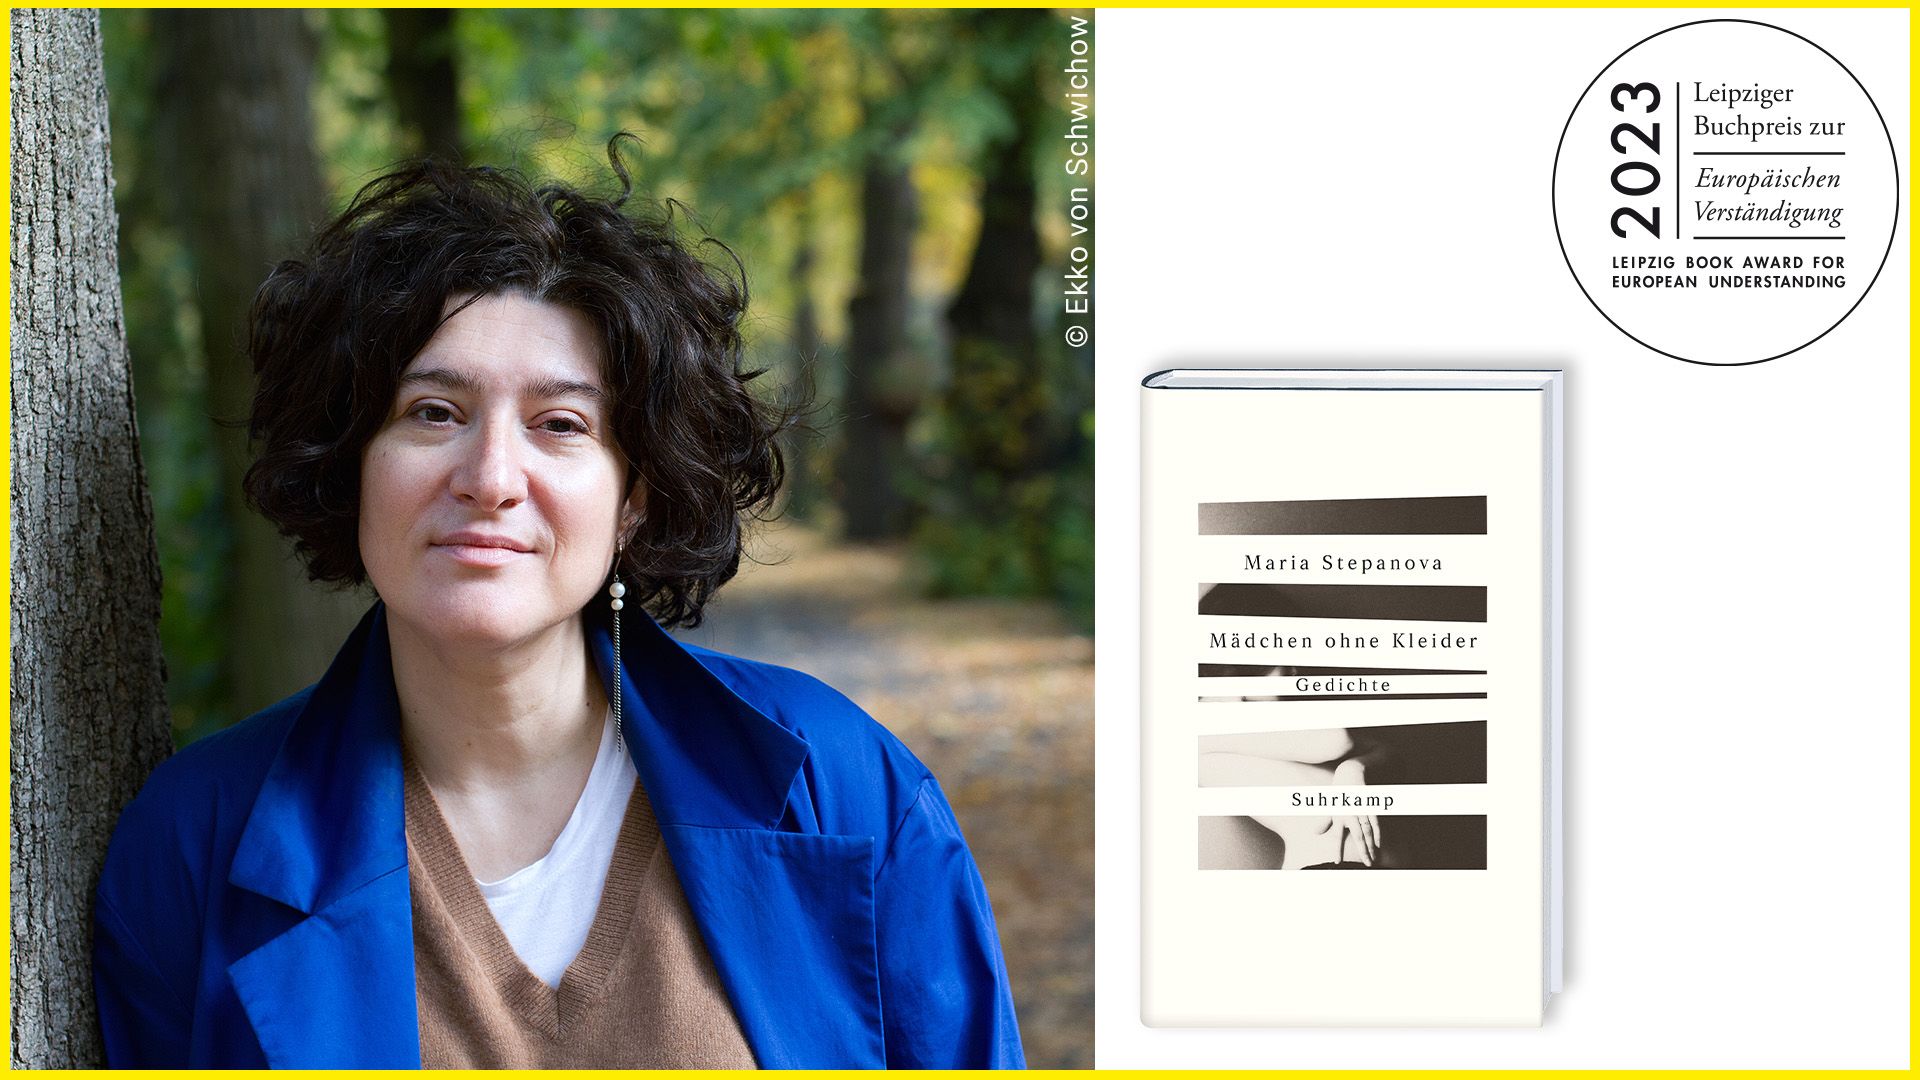 Maria Stepanova erhält den Leipziger Buchpreis zur Europäischen Verständigung 2023